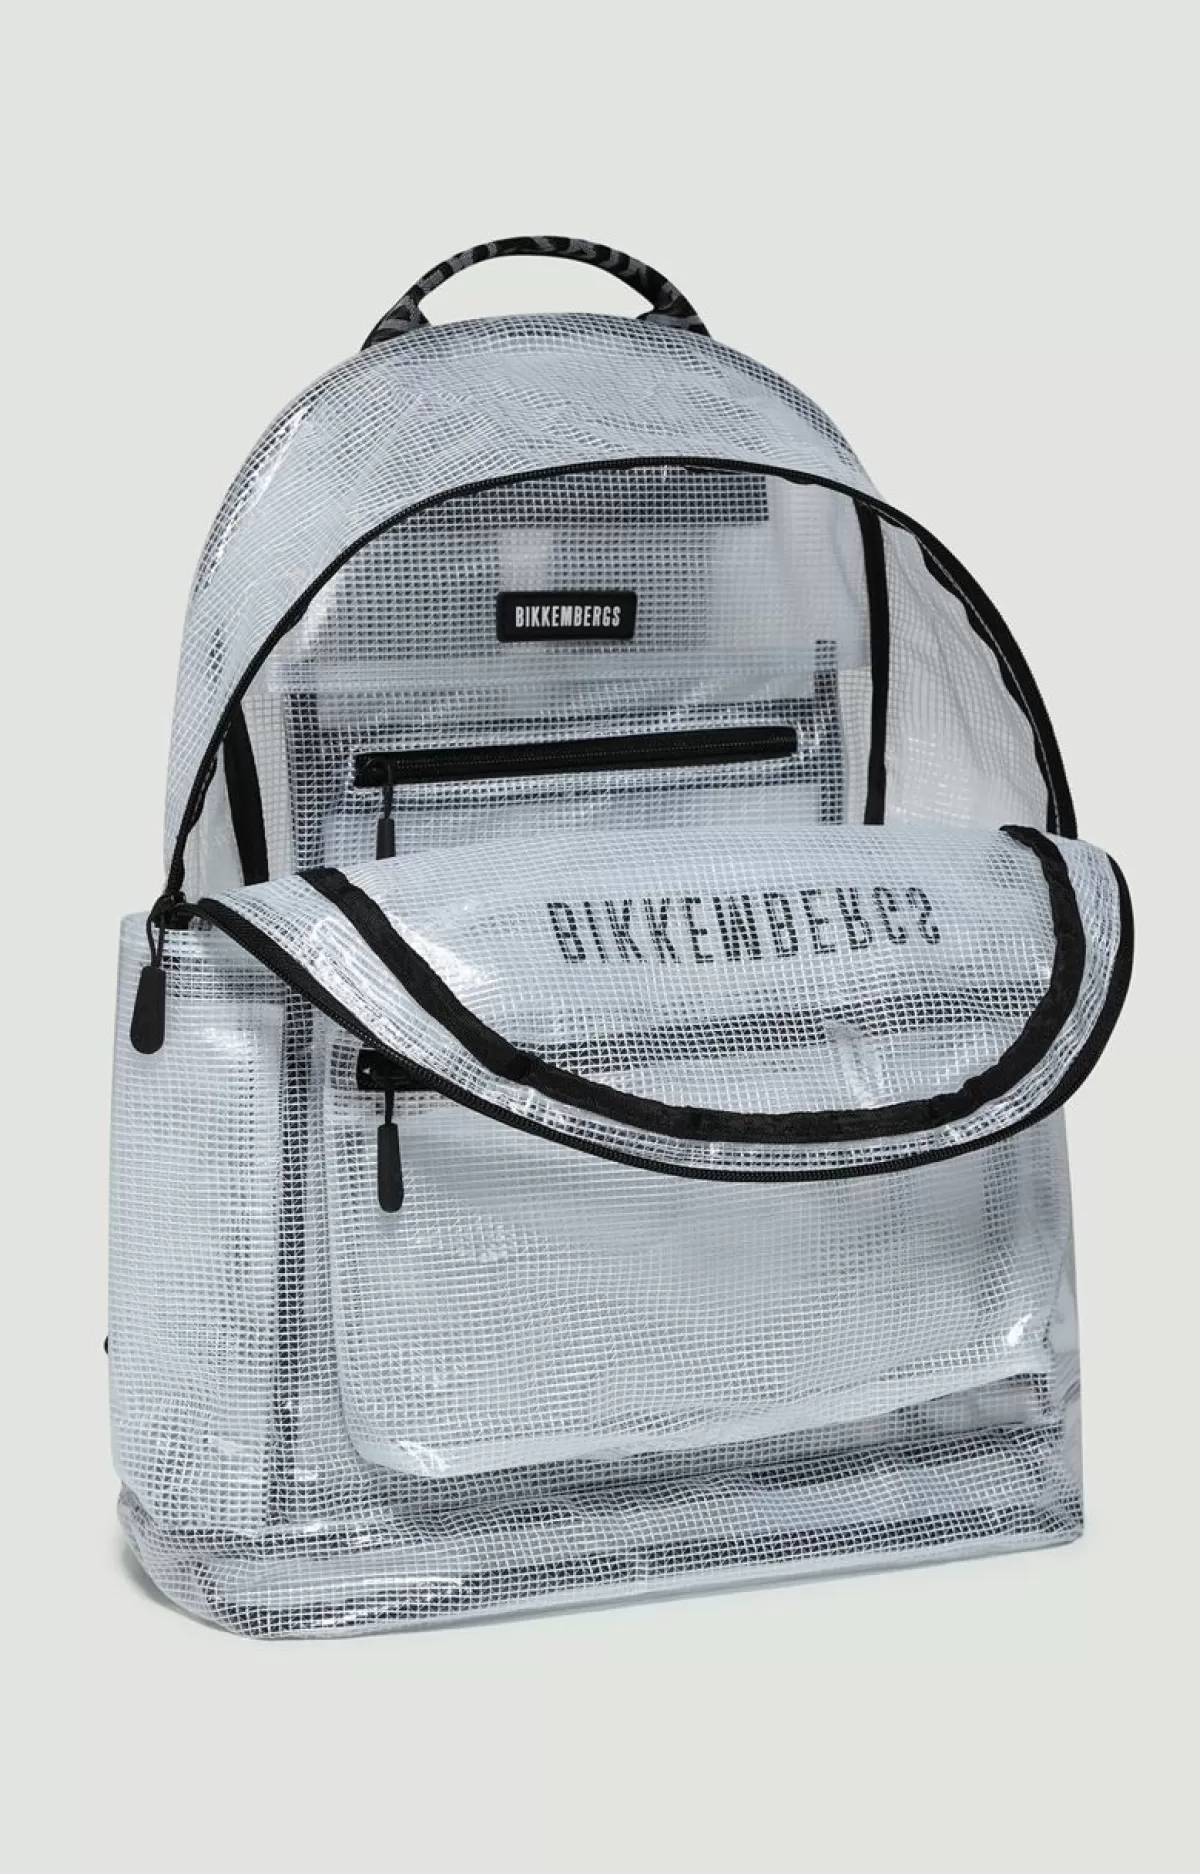 Bikkembergs Men'S Backpack - Bkk Star White Best Sale